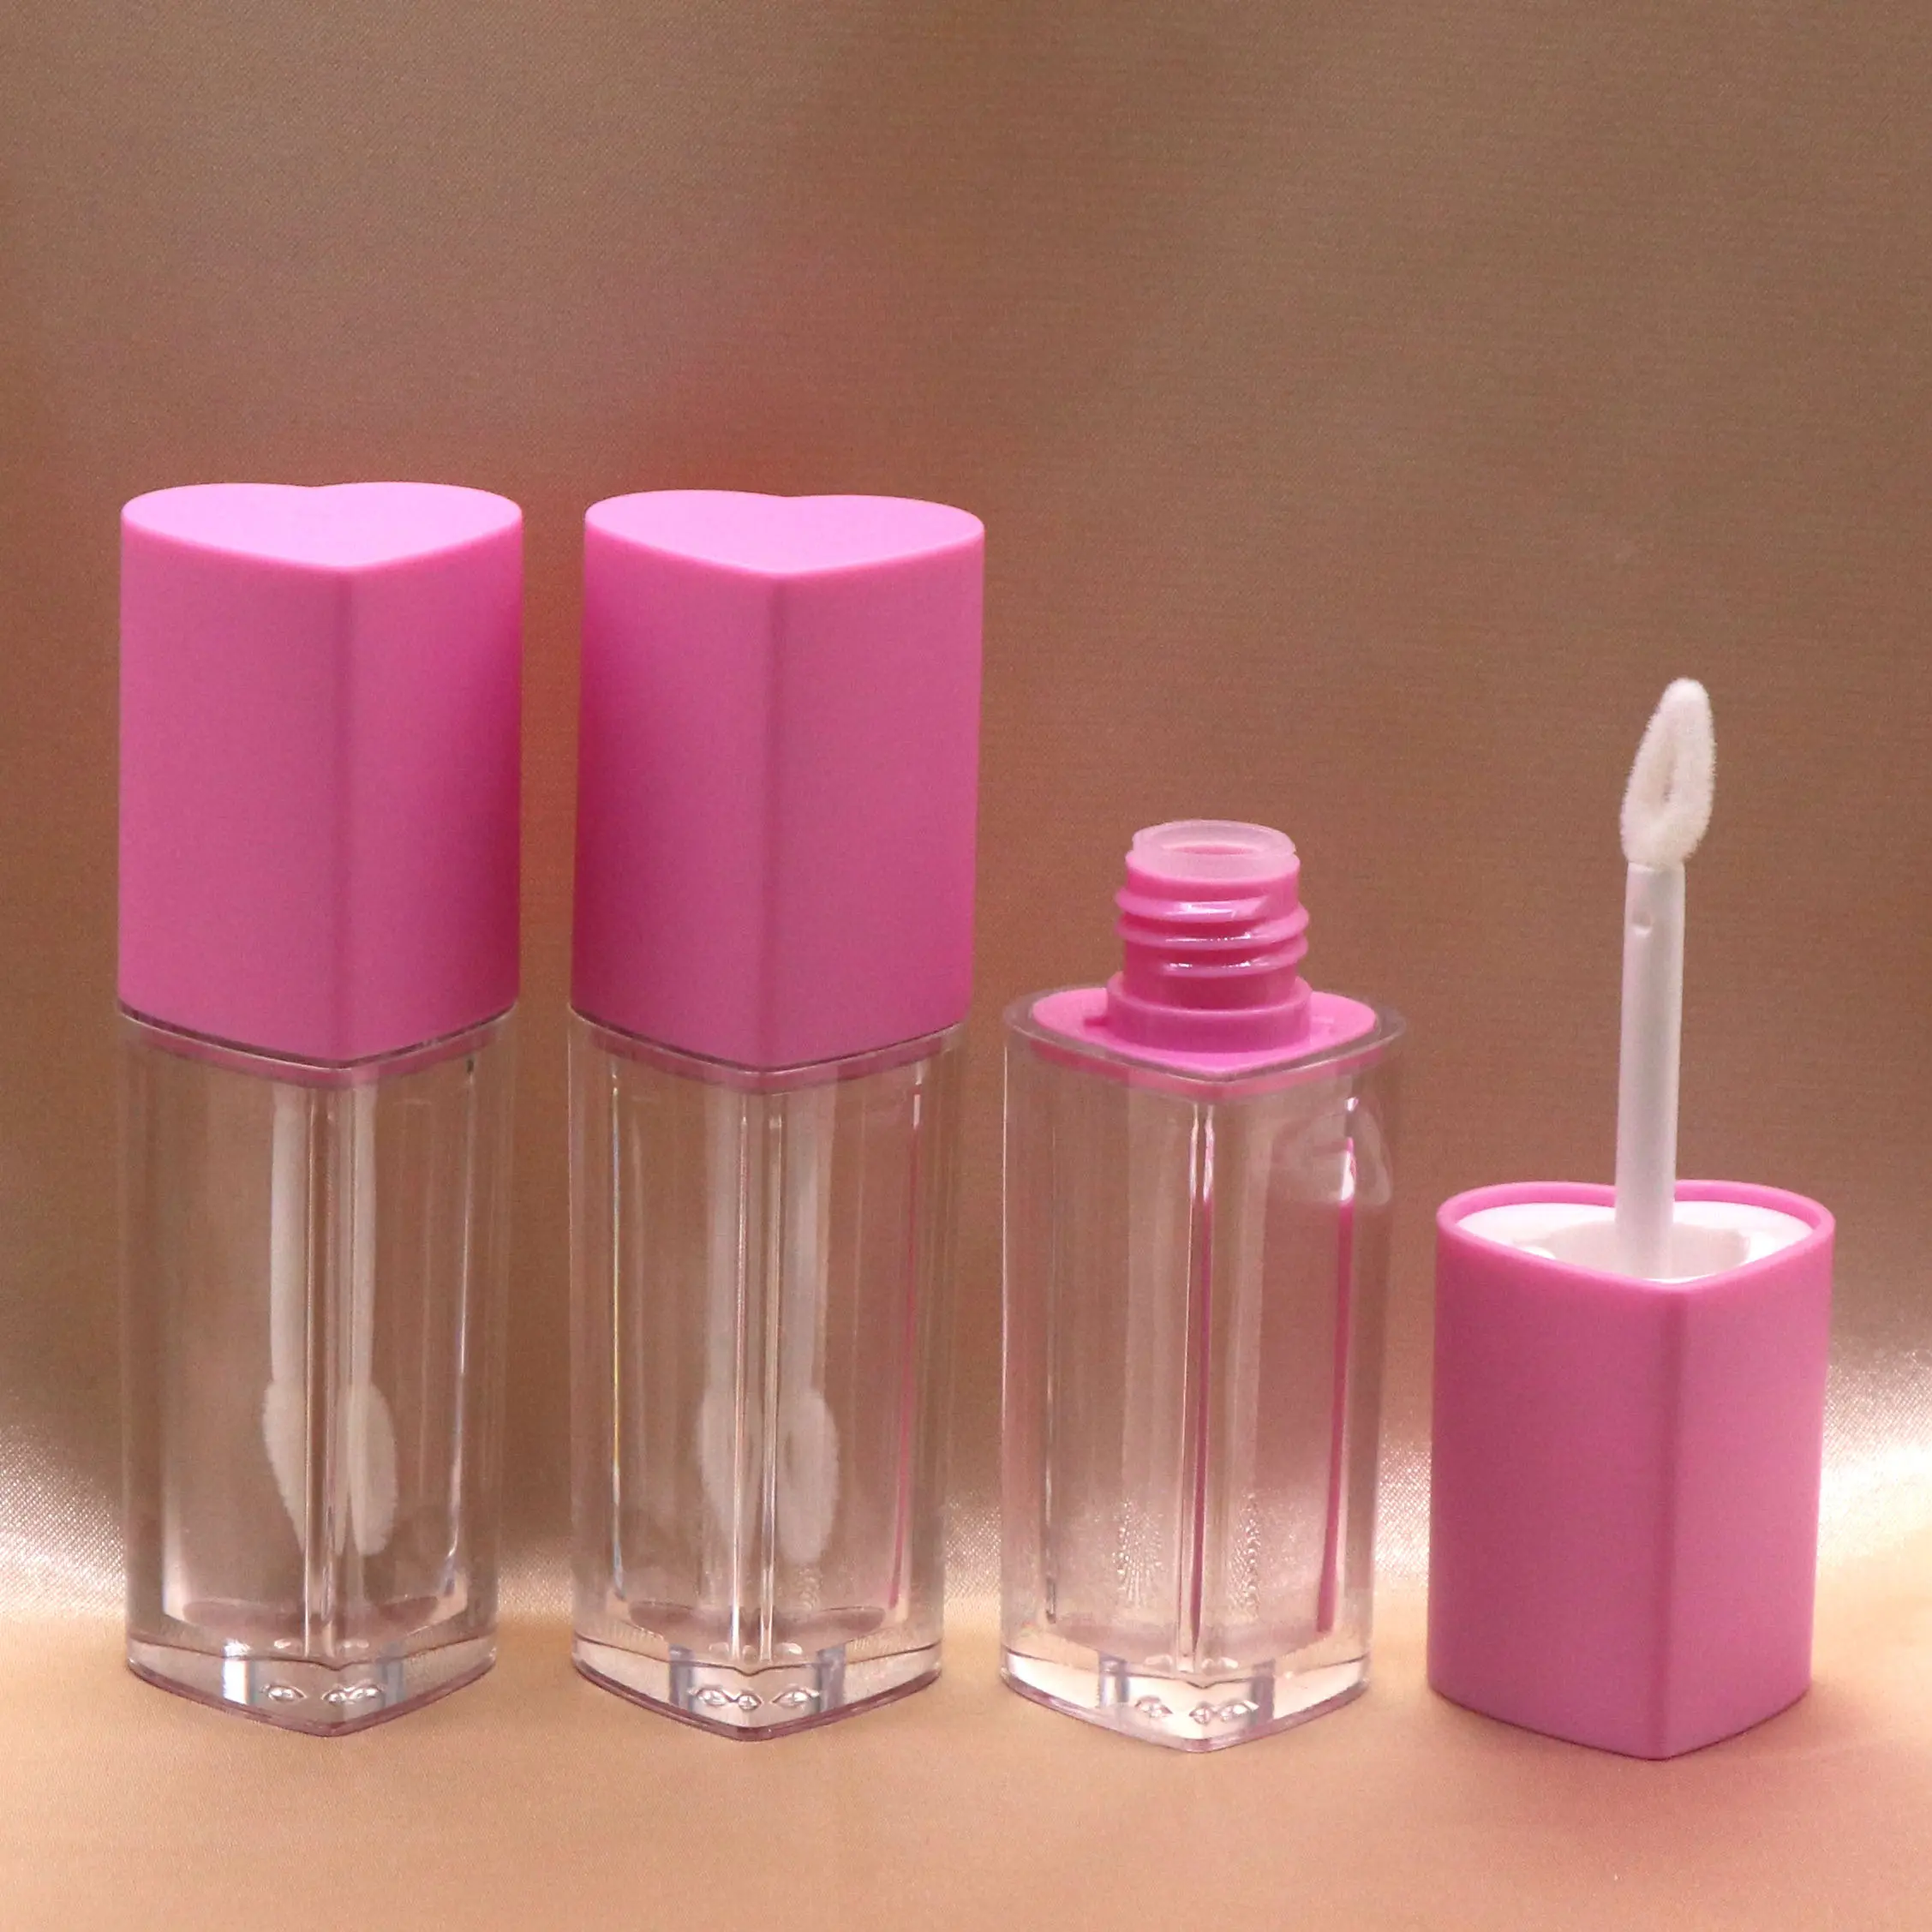 Botol Lip Gloss bening bahan plastik, kuas warna bentuk hati, tongkat Tube Lip Gloss Bening, tabung kosmetik cetakan layar 5ml